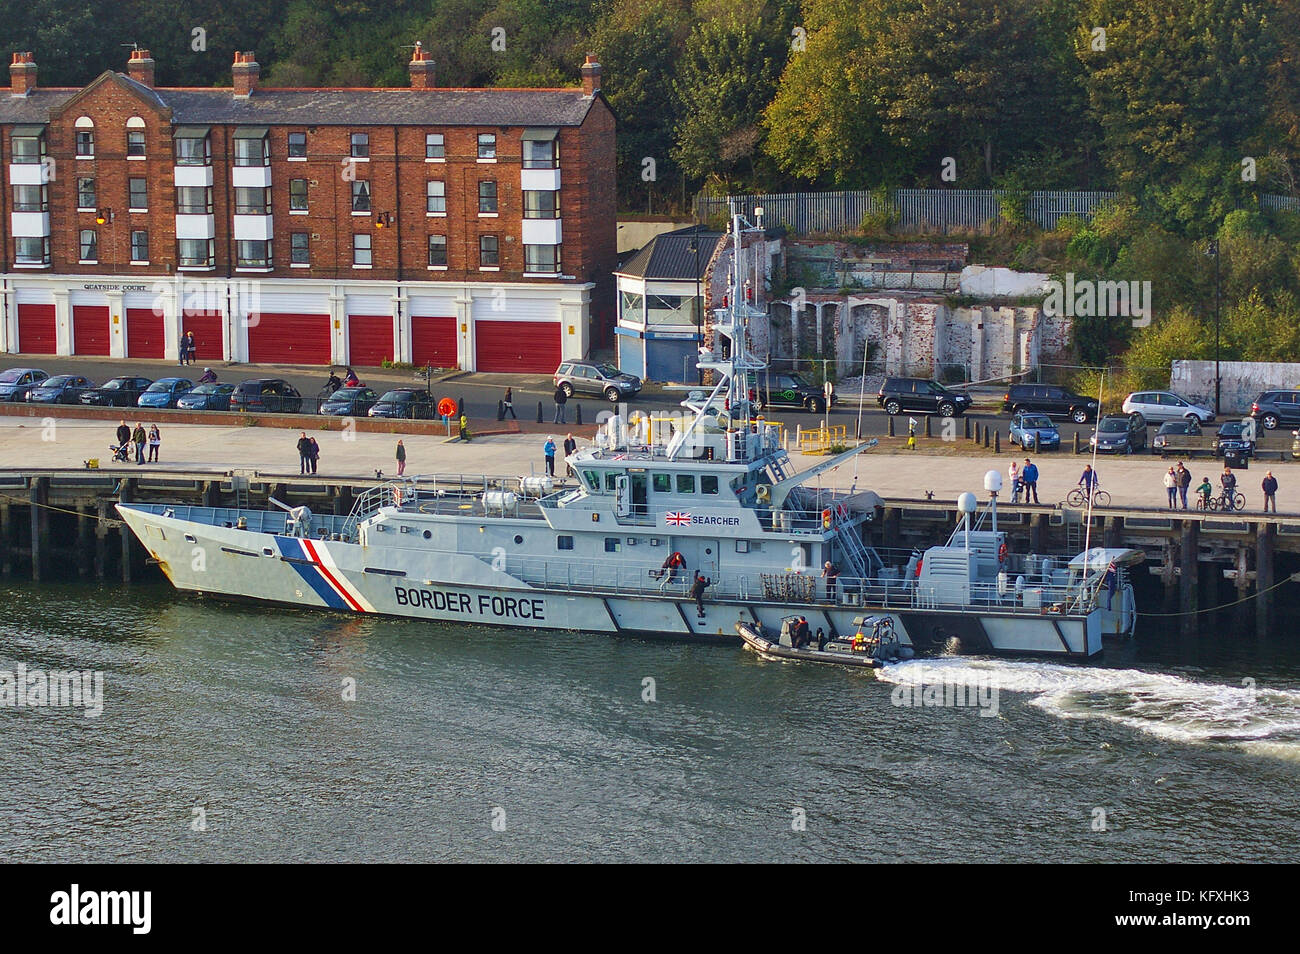 Newcastle, Royaume-Uni - Octobre 5th, 2014 - uk border vigueur cutter chercheur à hmc les amarres avec le bateau de patrouille le long des côtes à venir Banque D'Images